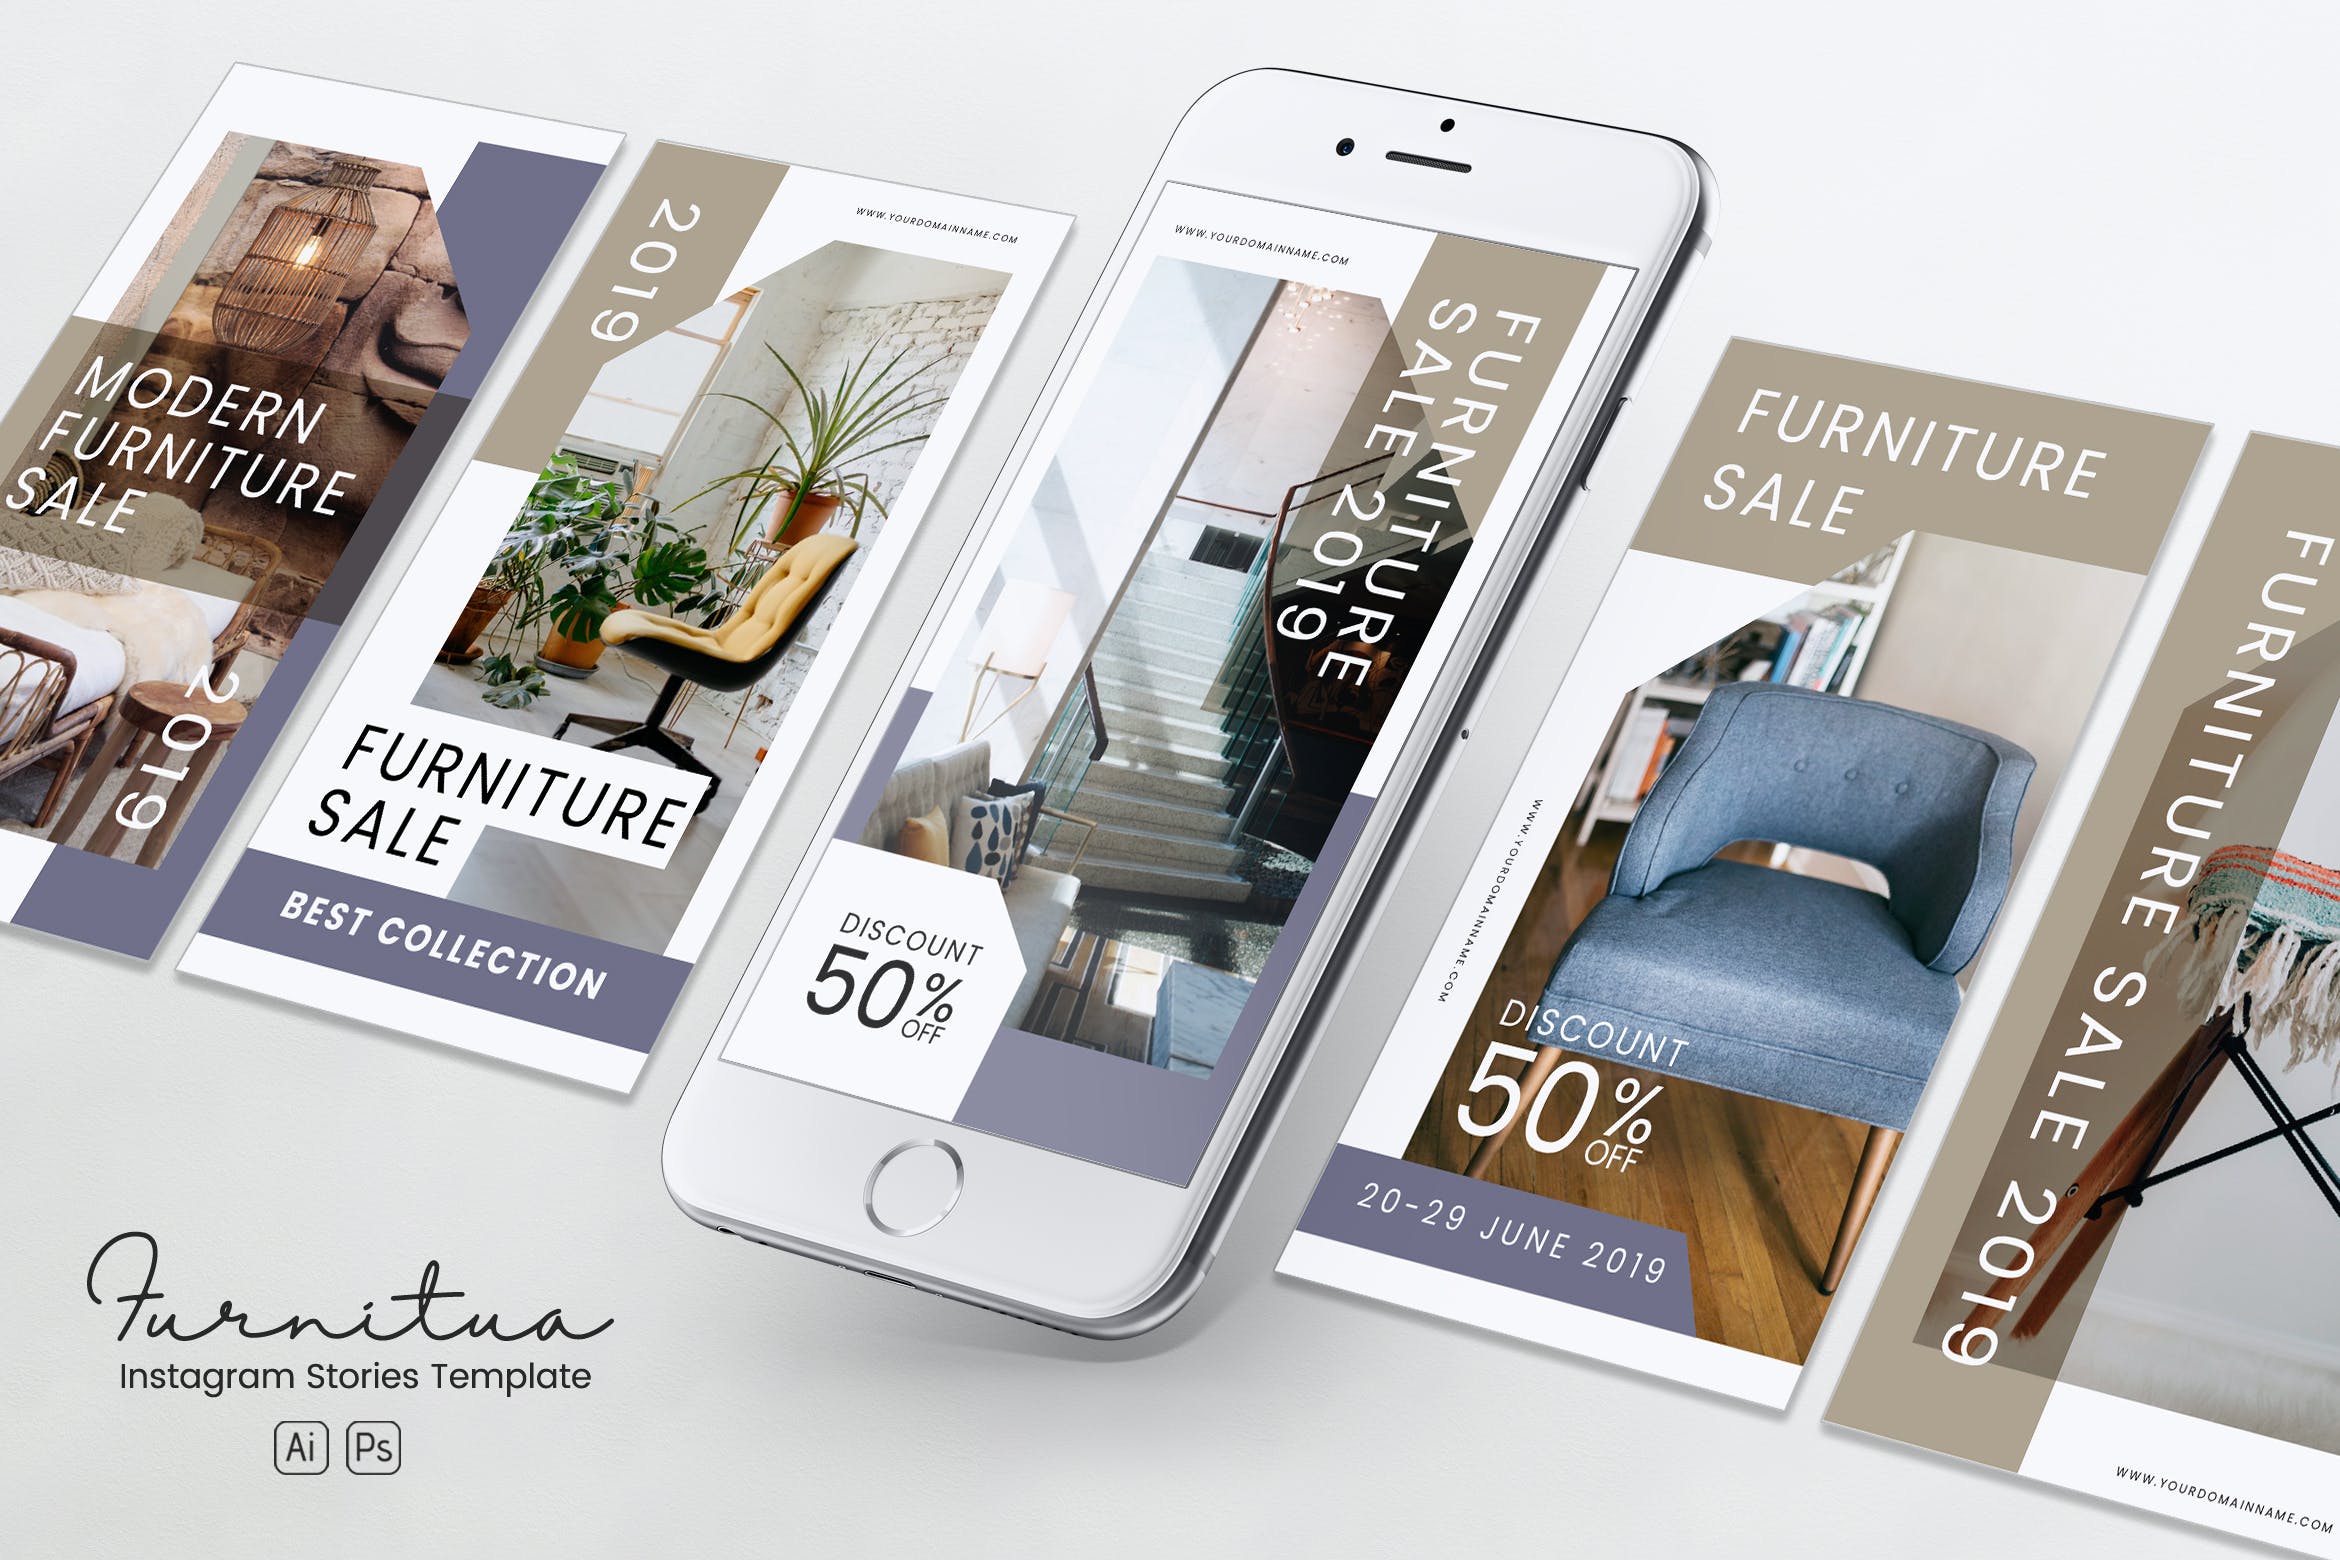 家具品牌故事推广Instagram社交推广设计素材PSD&AI模板素材中国精选 Furniture Instagram Stories PSD & AI Template插图